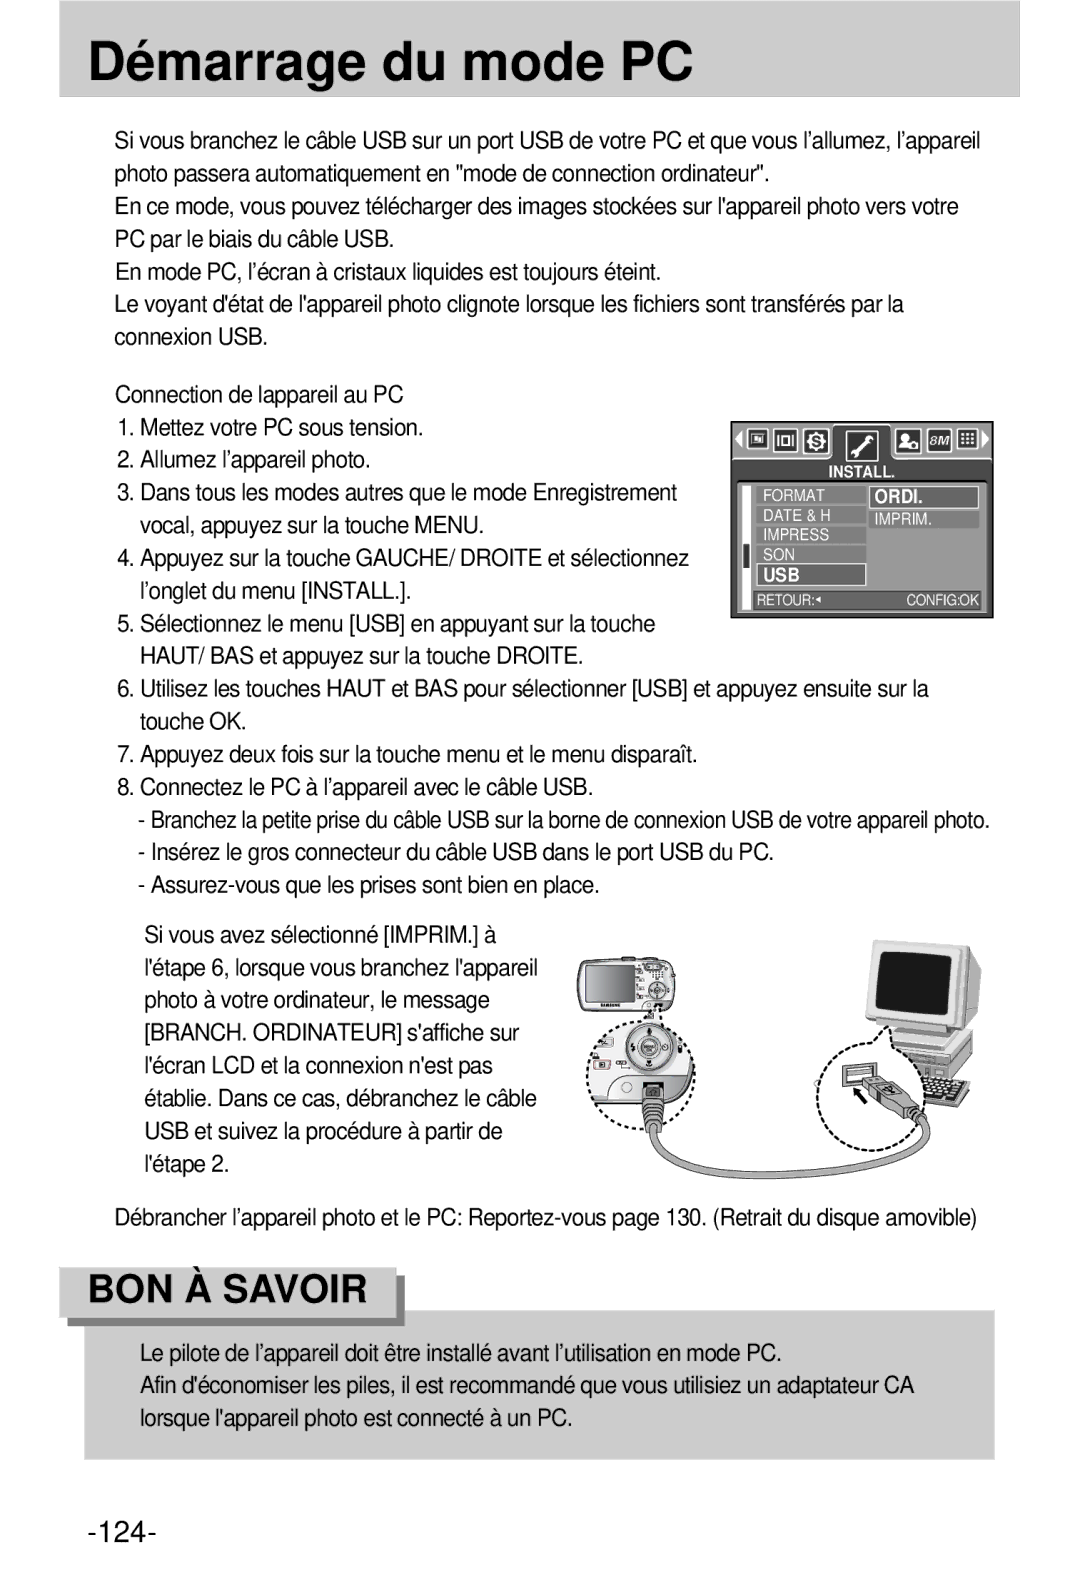 Samsung EC-V800ZSBA/FR manual Démarrage du mode PC 